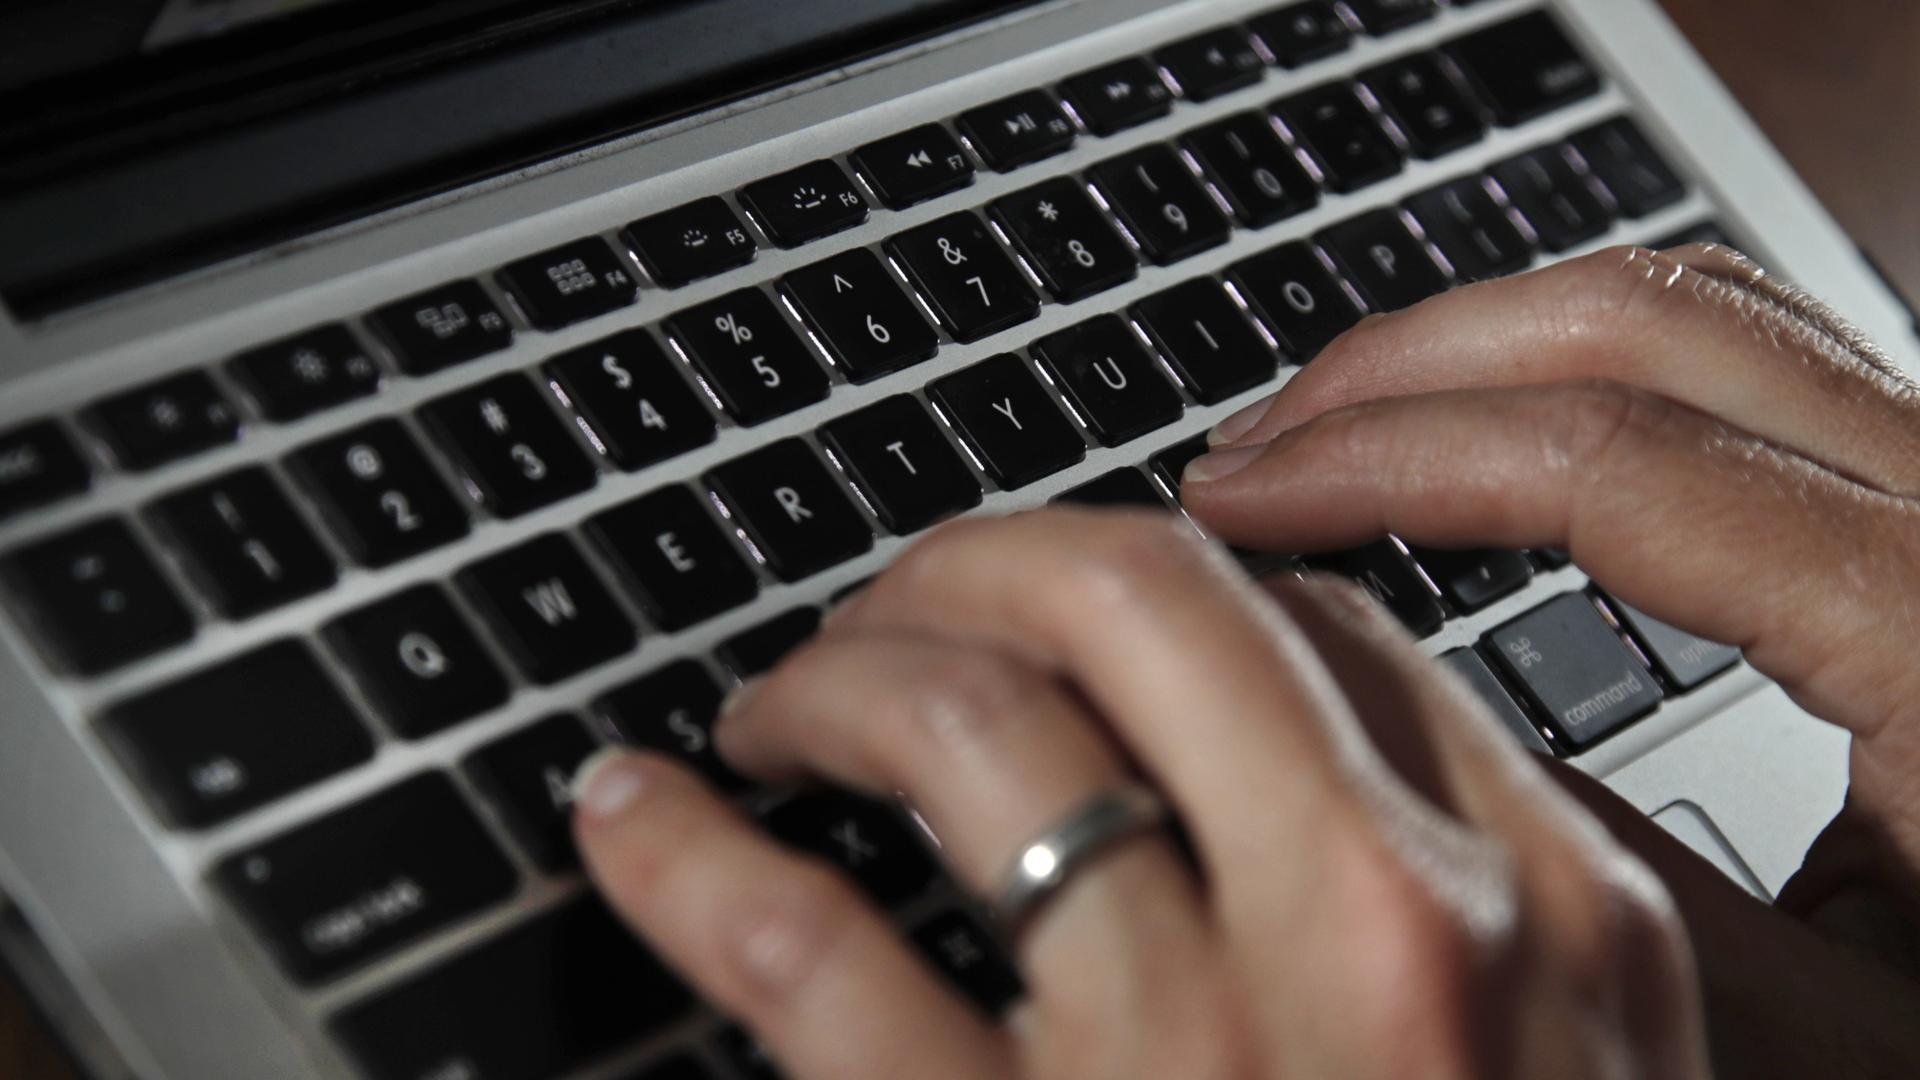 Fingers type on a laptop keyboard